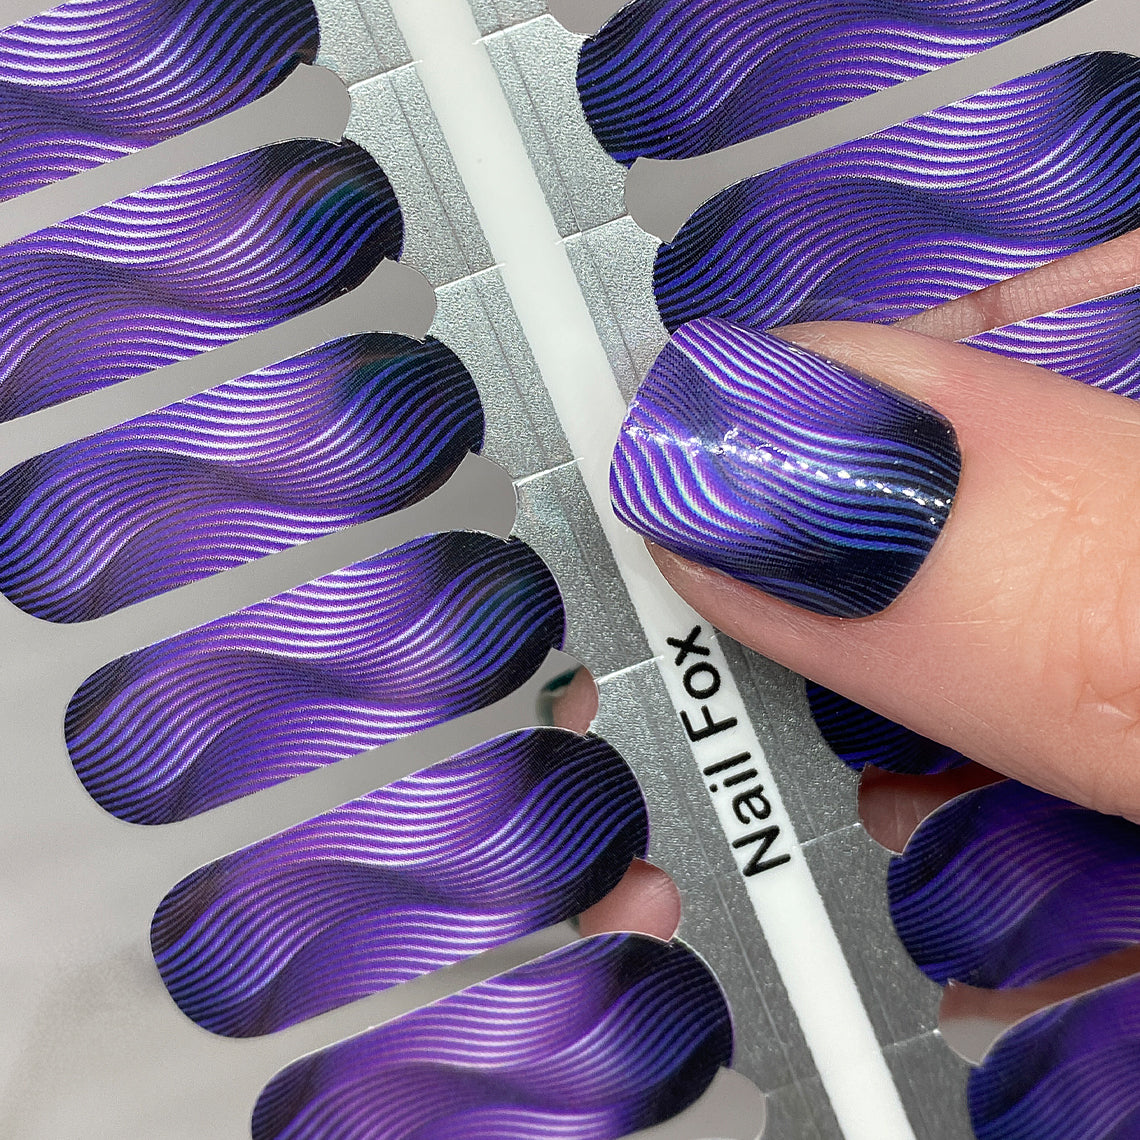 Mesmerized Exclusive Design Nail Wraps